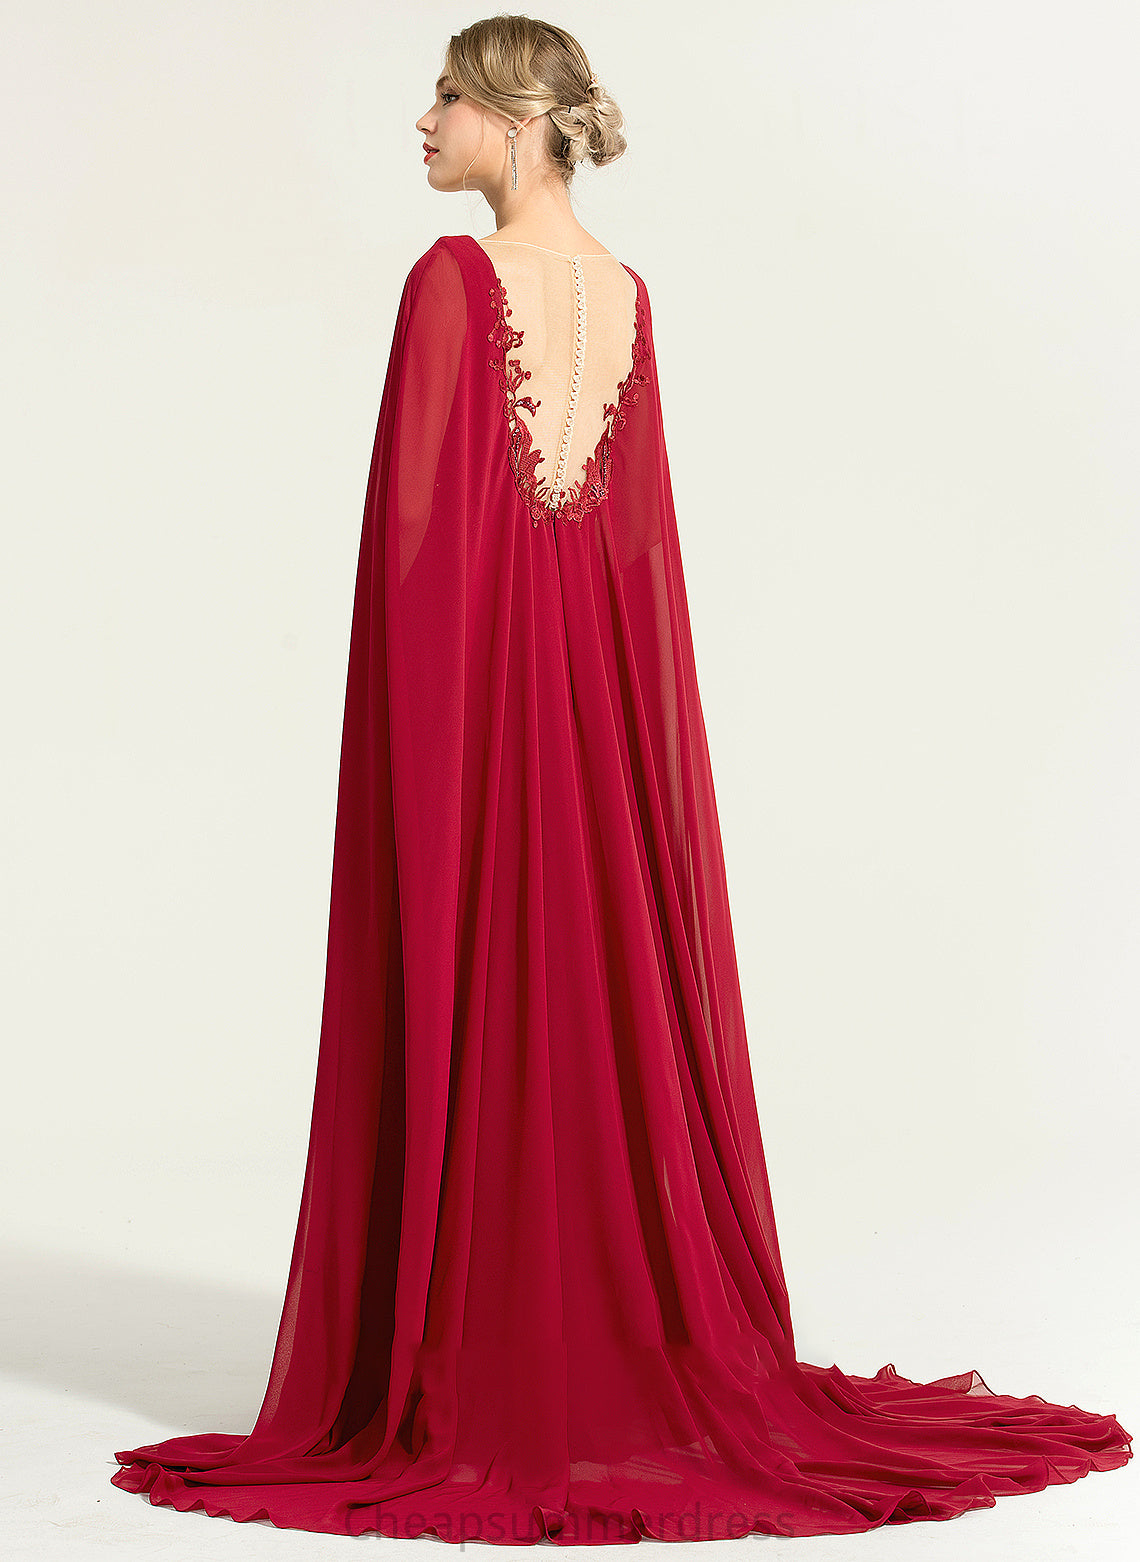 Sequins Chiffon A-Line Dress Floor-Length With Anastasia Wedding Dresses V-neck Wedding